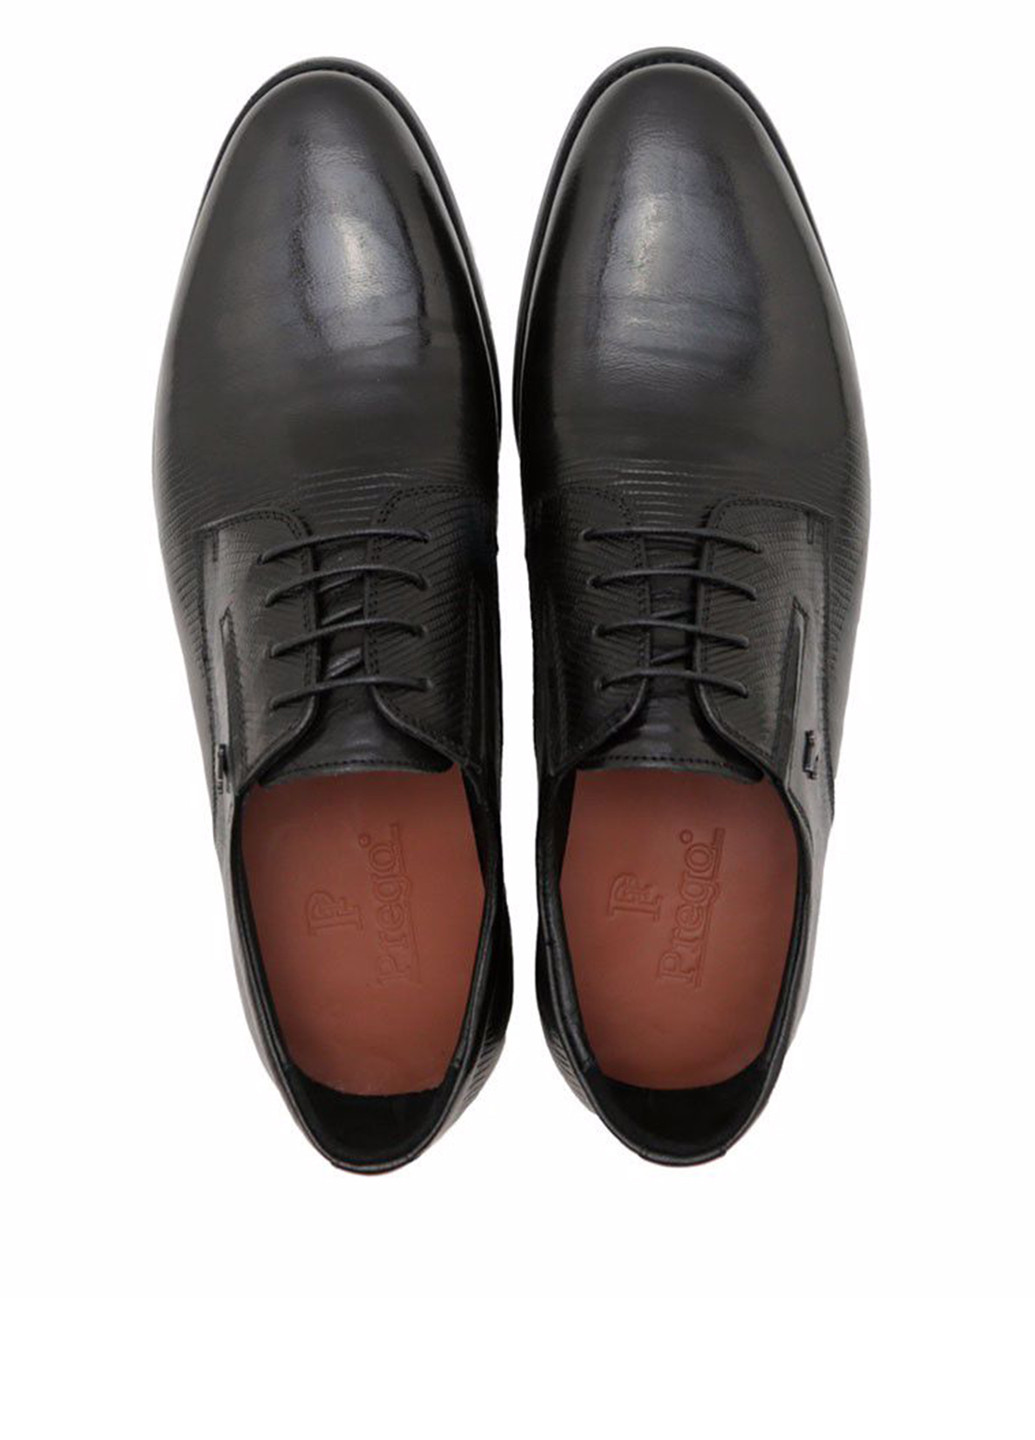 Черные классические туфли Prego на шнурках